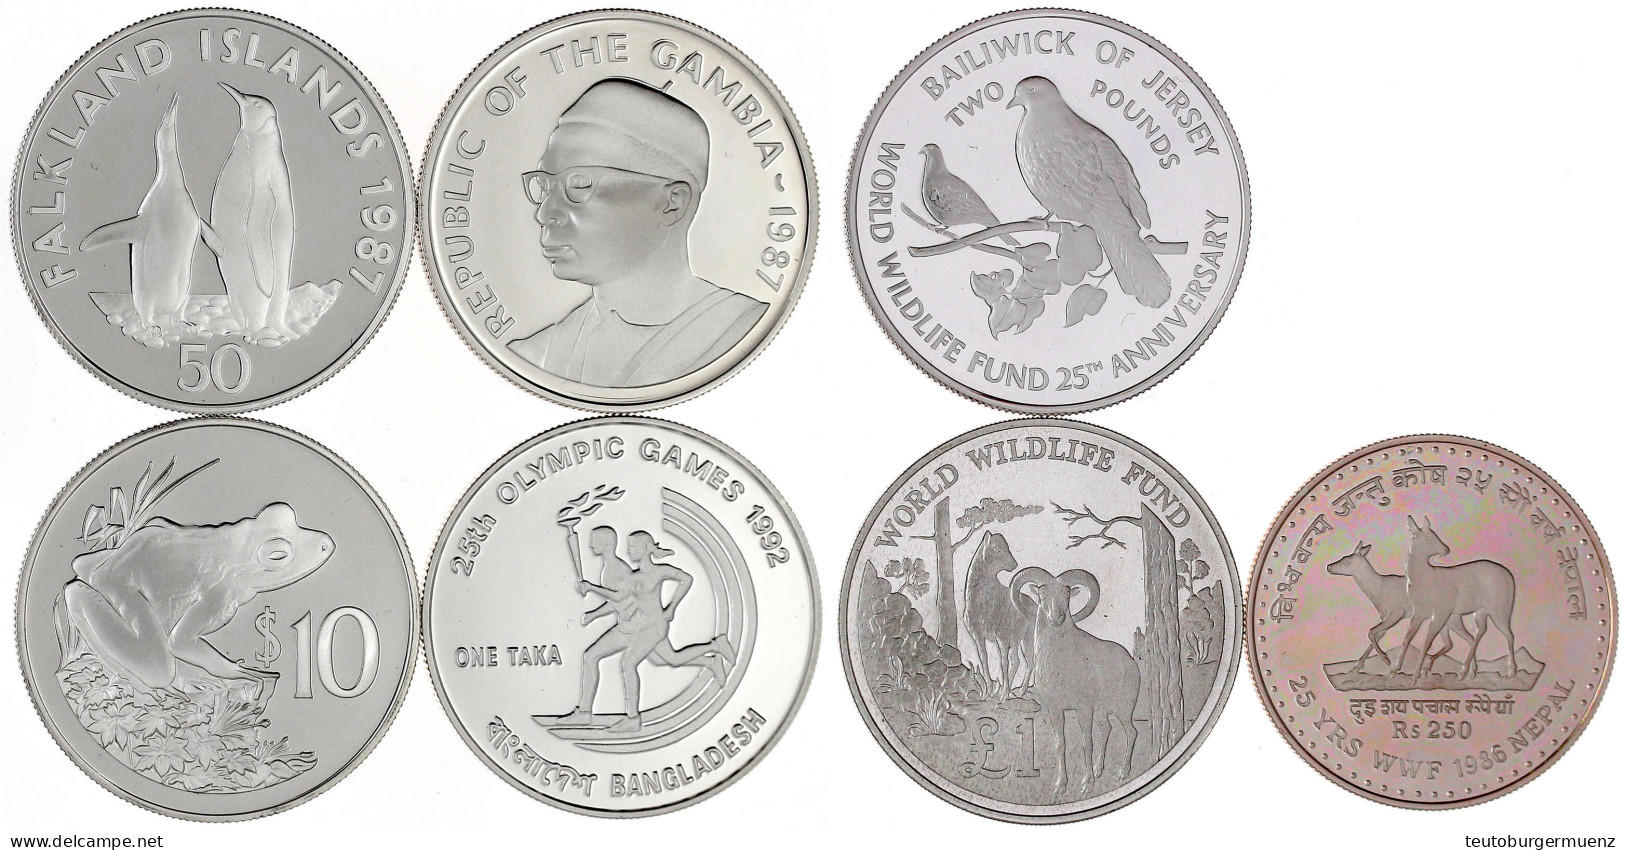 7 Silbergedenkmünzen Aus 1986 Bis 1992. Davon 6 Mit Tiermotiven U.a. Fiji, Gambia, Nepal, Etc. In Kapseln. Polierte Plat - Collections